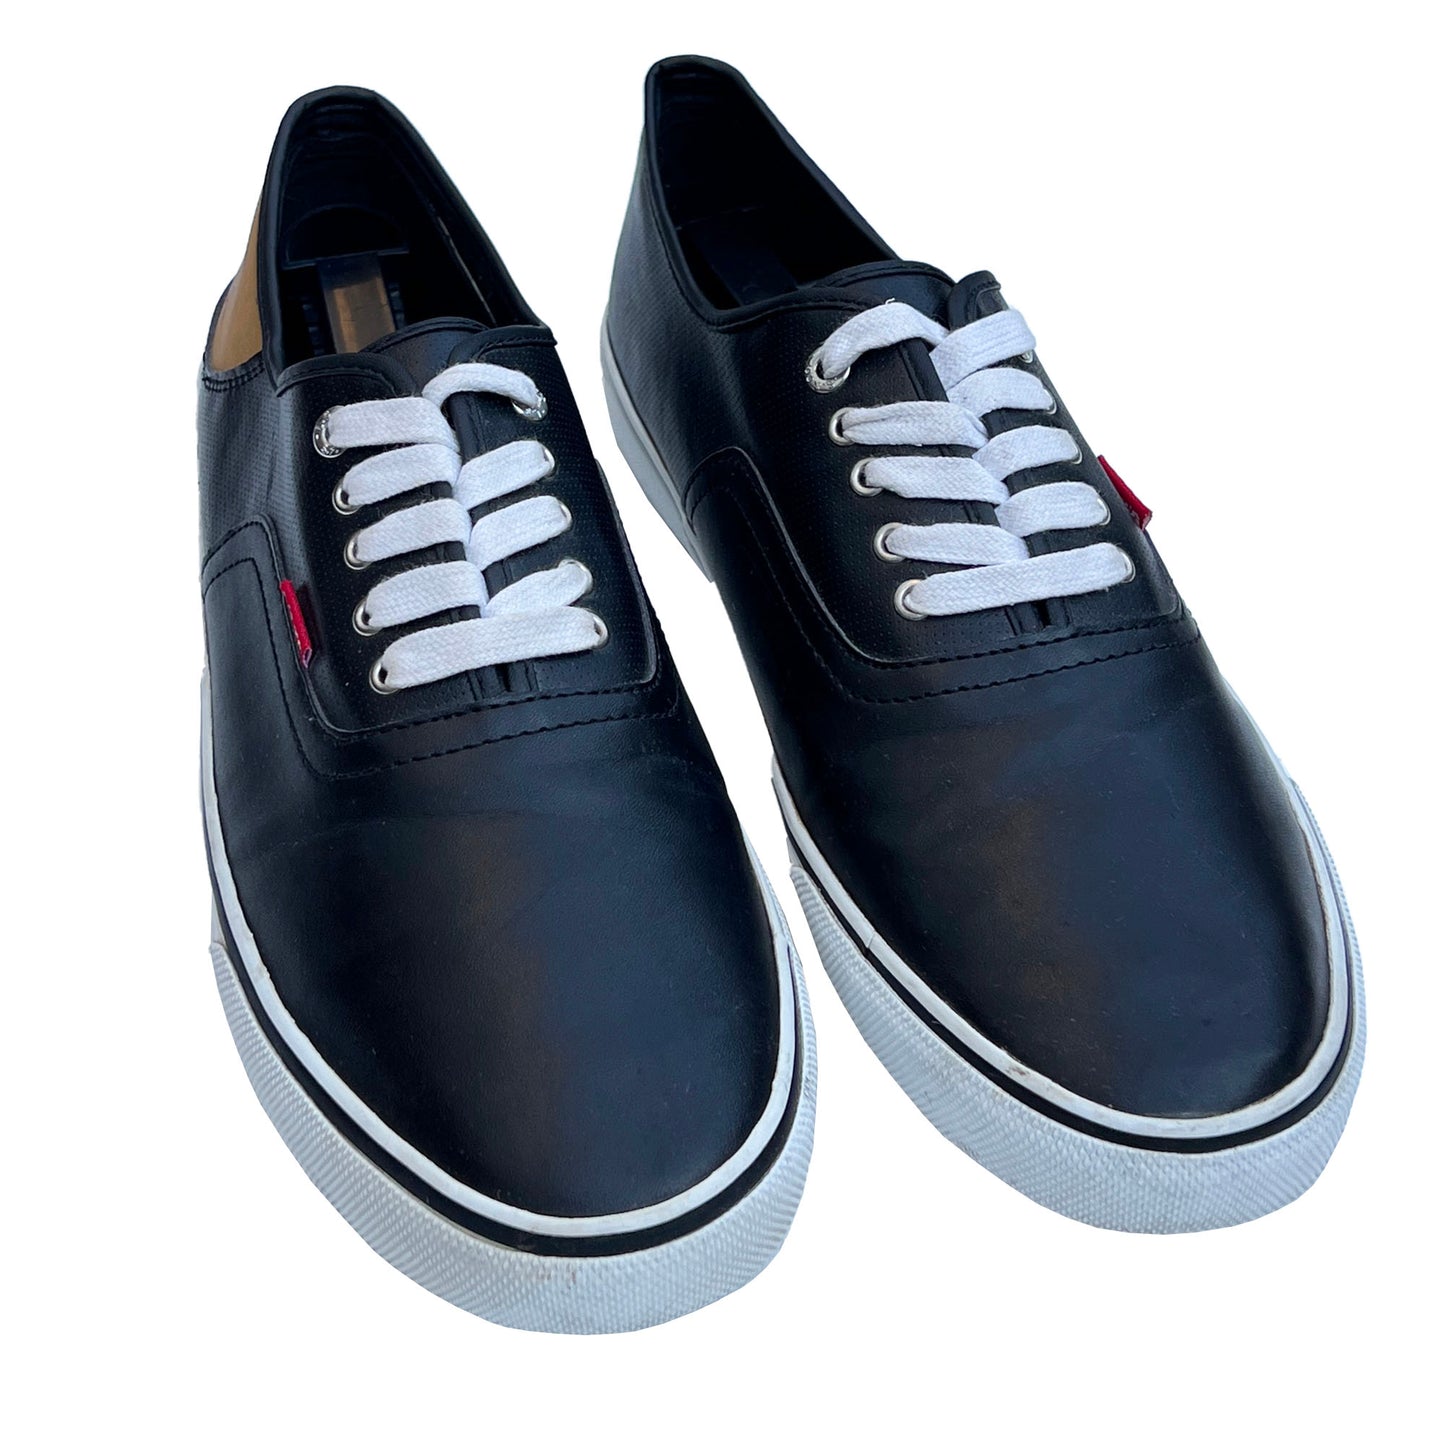 Black-Leather-Sneakers-for-Men_-Levi_s-Shoes_-Size-13.-Shop-eBargainsAndDeals.com